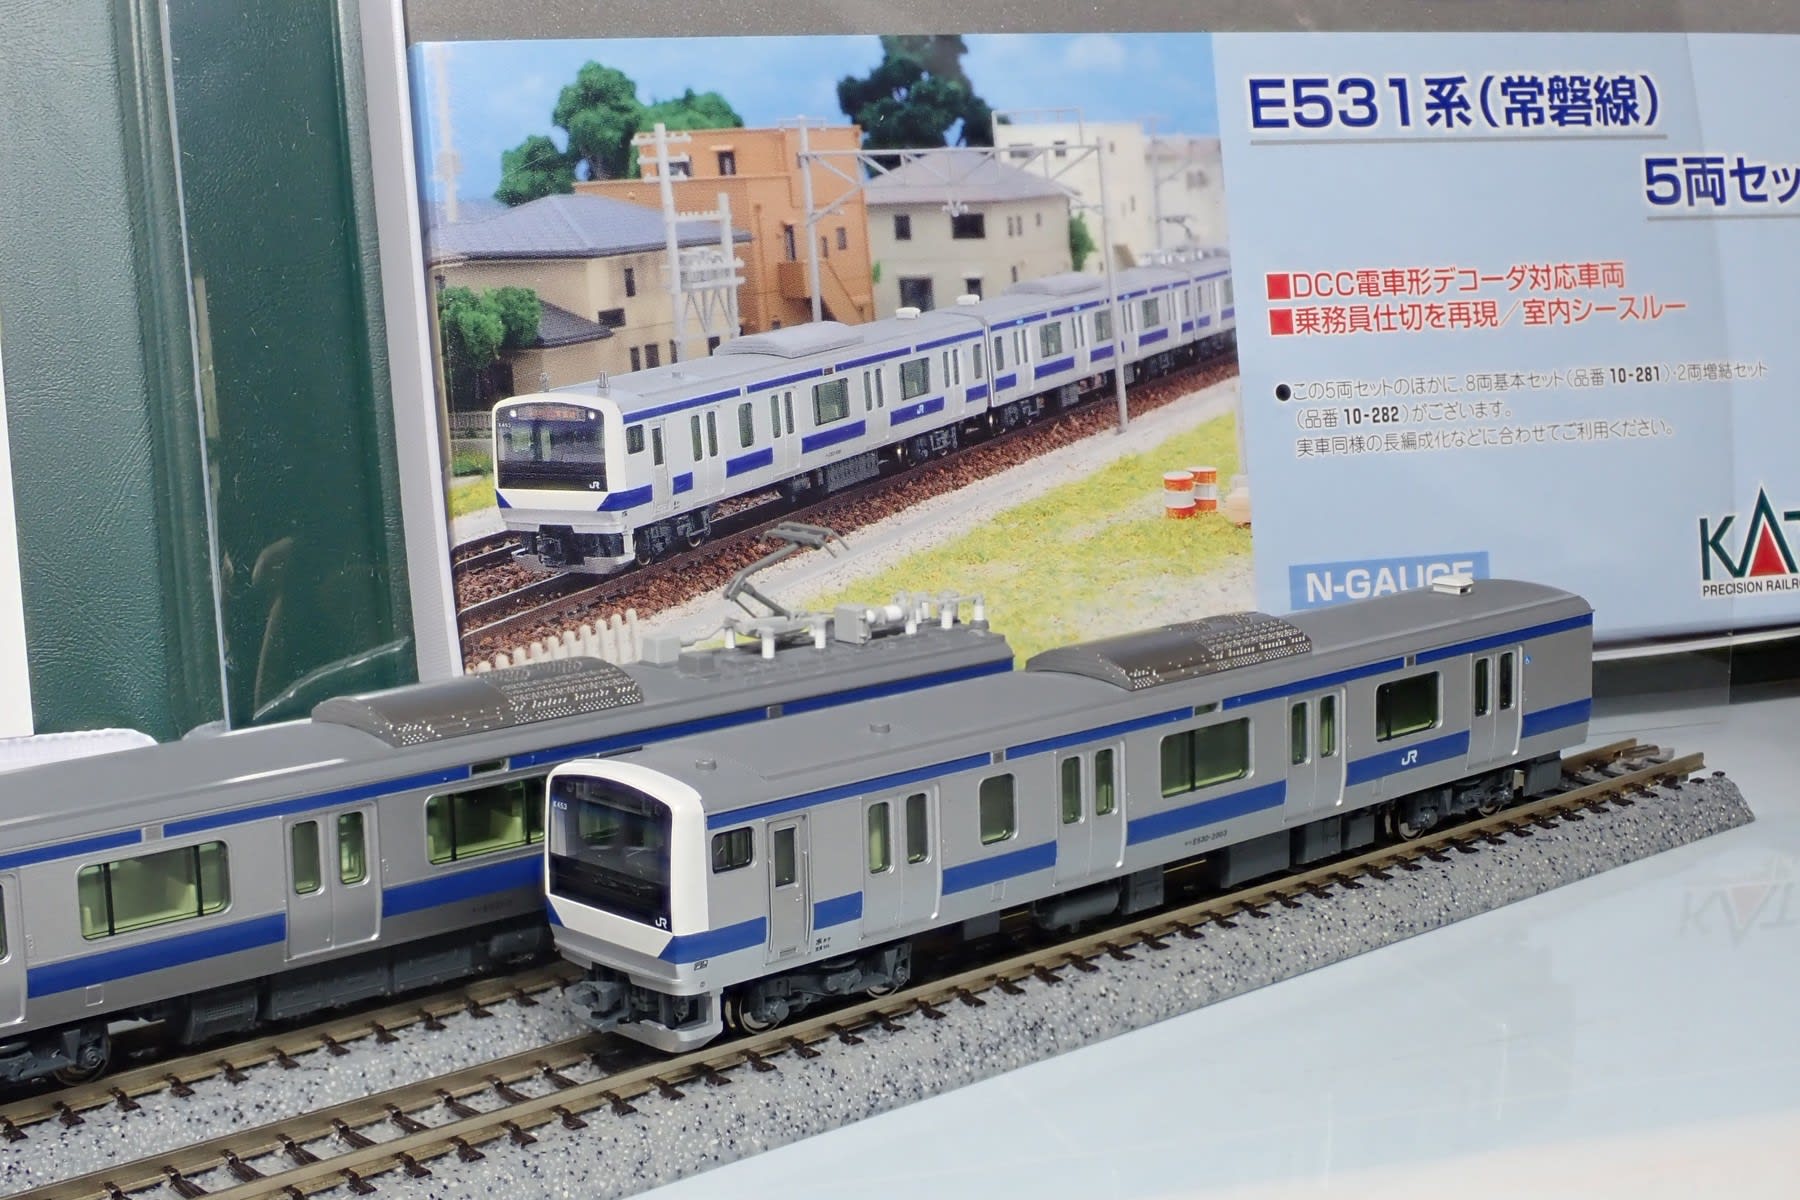 カプラーが変更。KATO E531系「常磐線・上野東京ライン」再生産品が 